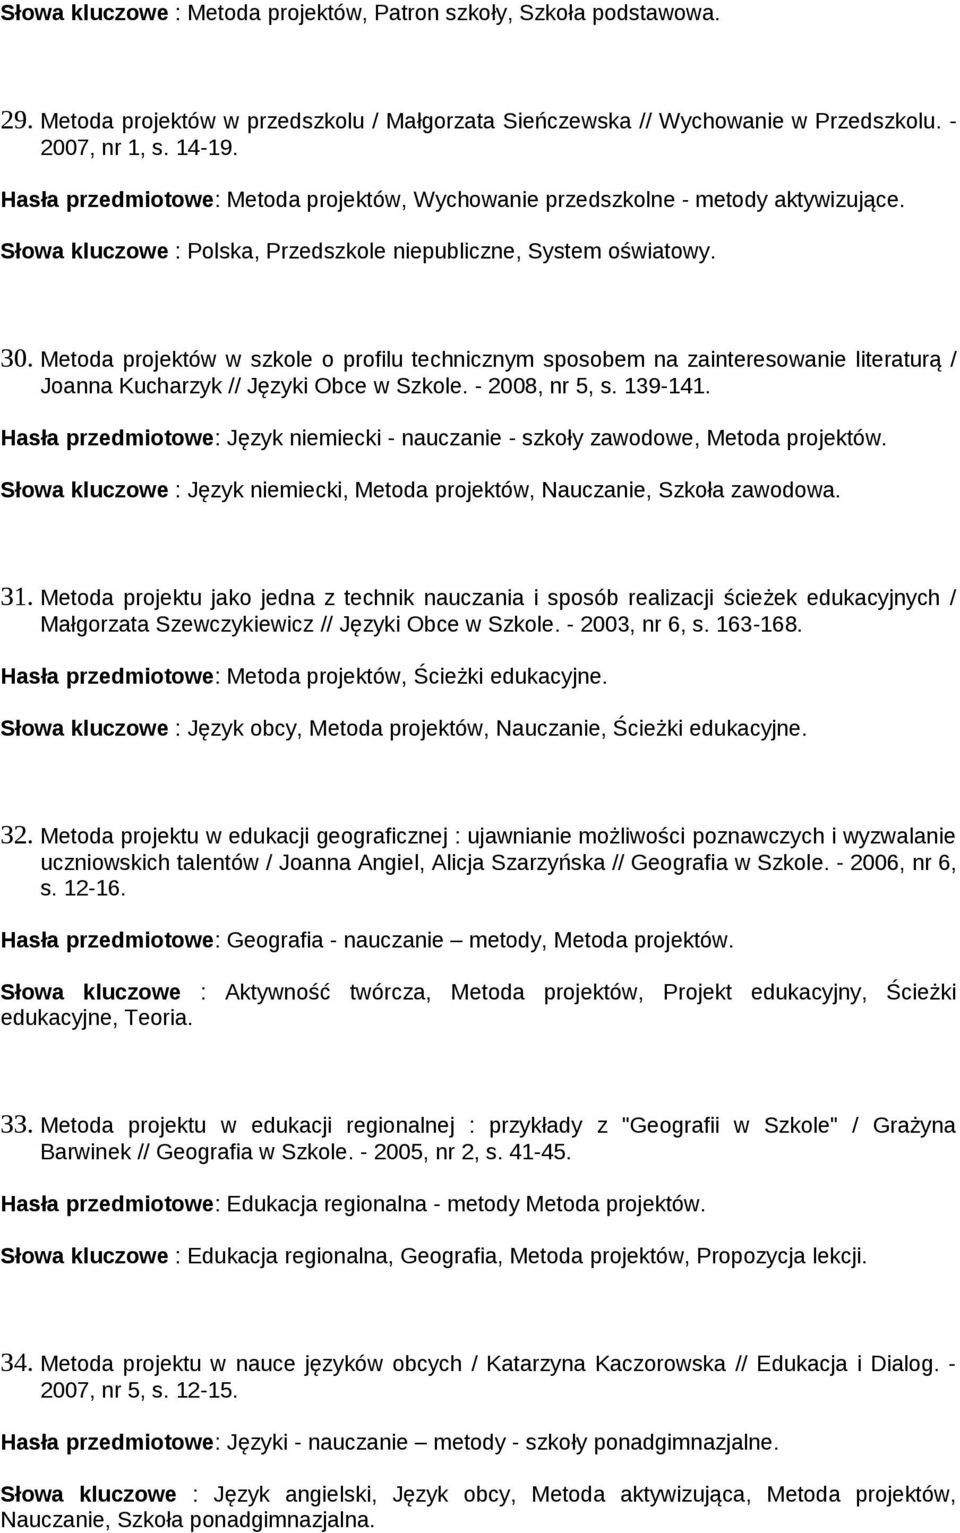 Metoda projektów w szkole o profilu technicznym sposobem na zainteresowanie literaturą / Joanna Kucharzyk // Języki Obce w Szkole. - 2008, nr 5, s. 139-141.